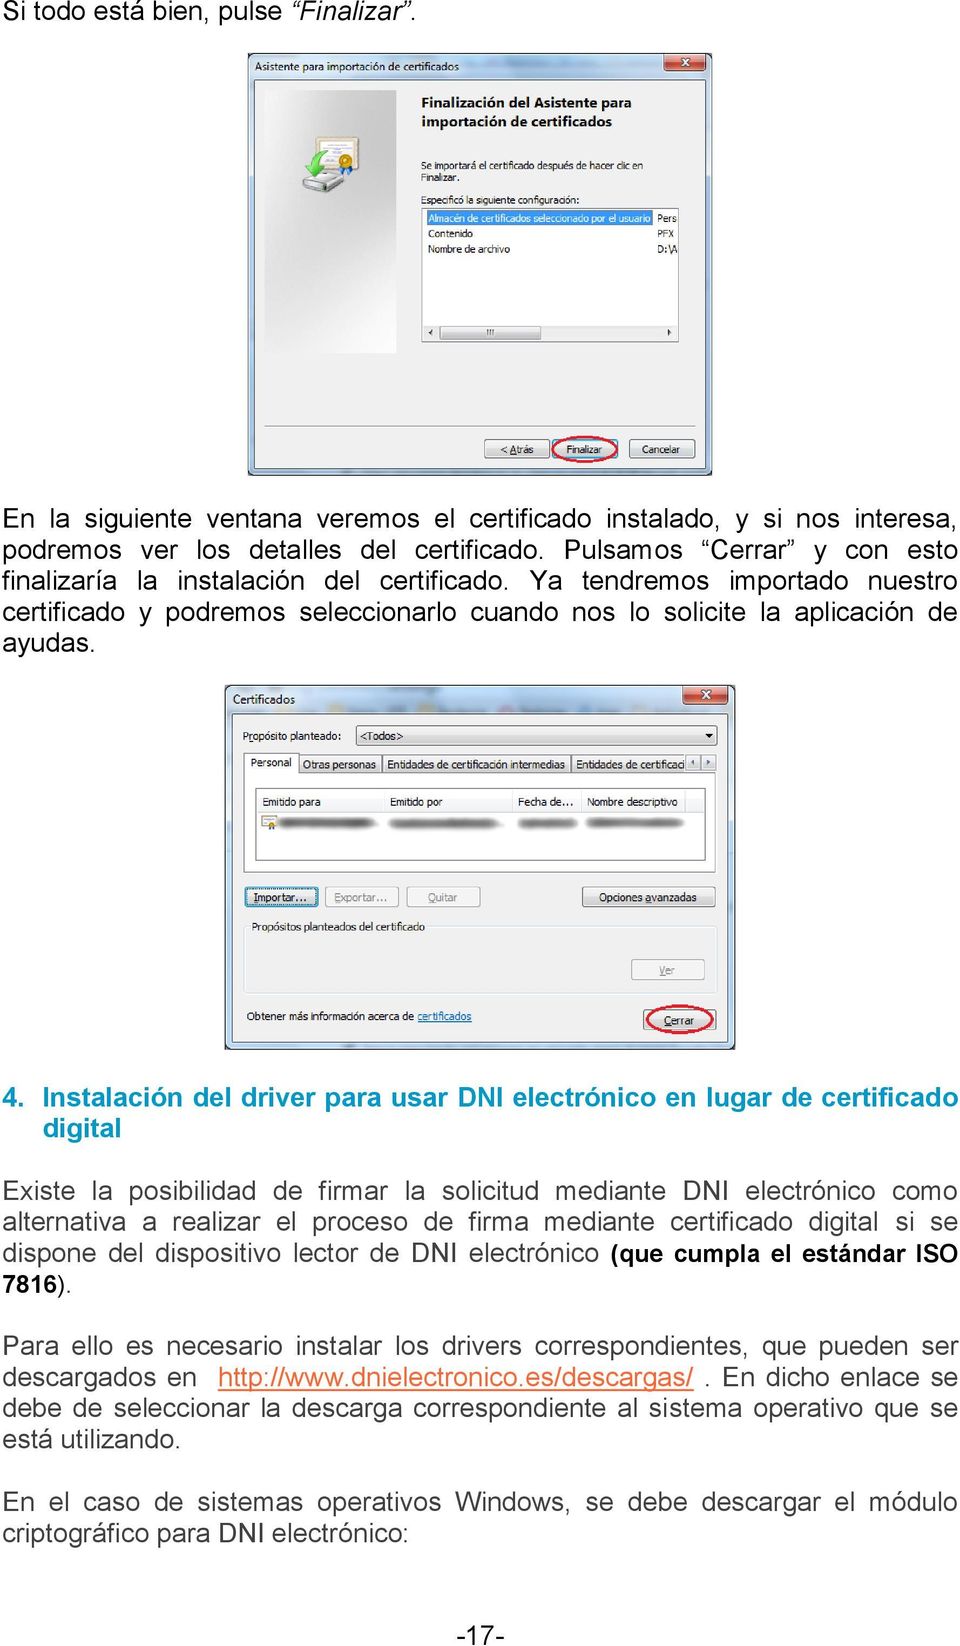 Instalación del driver para usar DNI electrónico en lugar de certificado digital Existe la posibilidad de firmar la solicitud mediante DNI electrónico como alternativa a realizar el proceso de firma